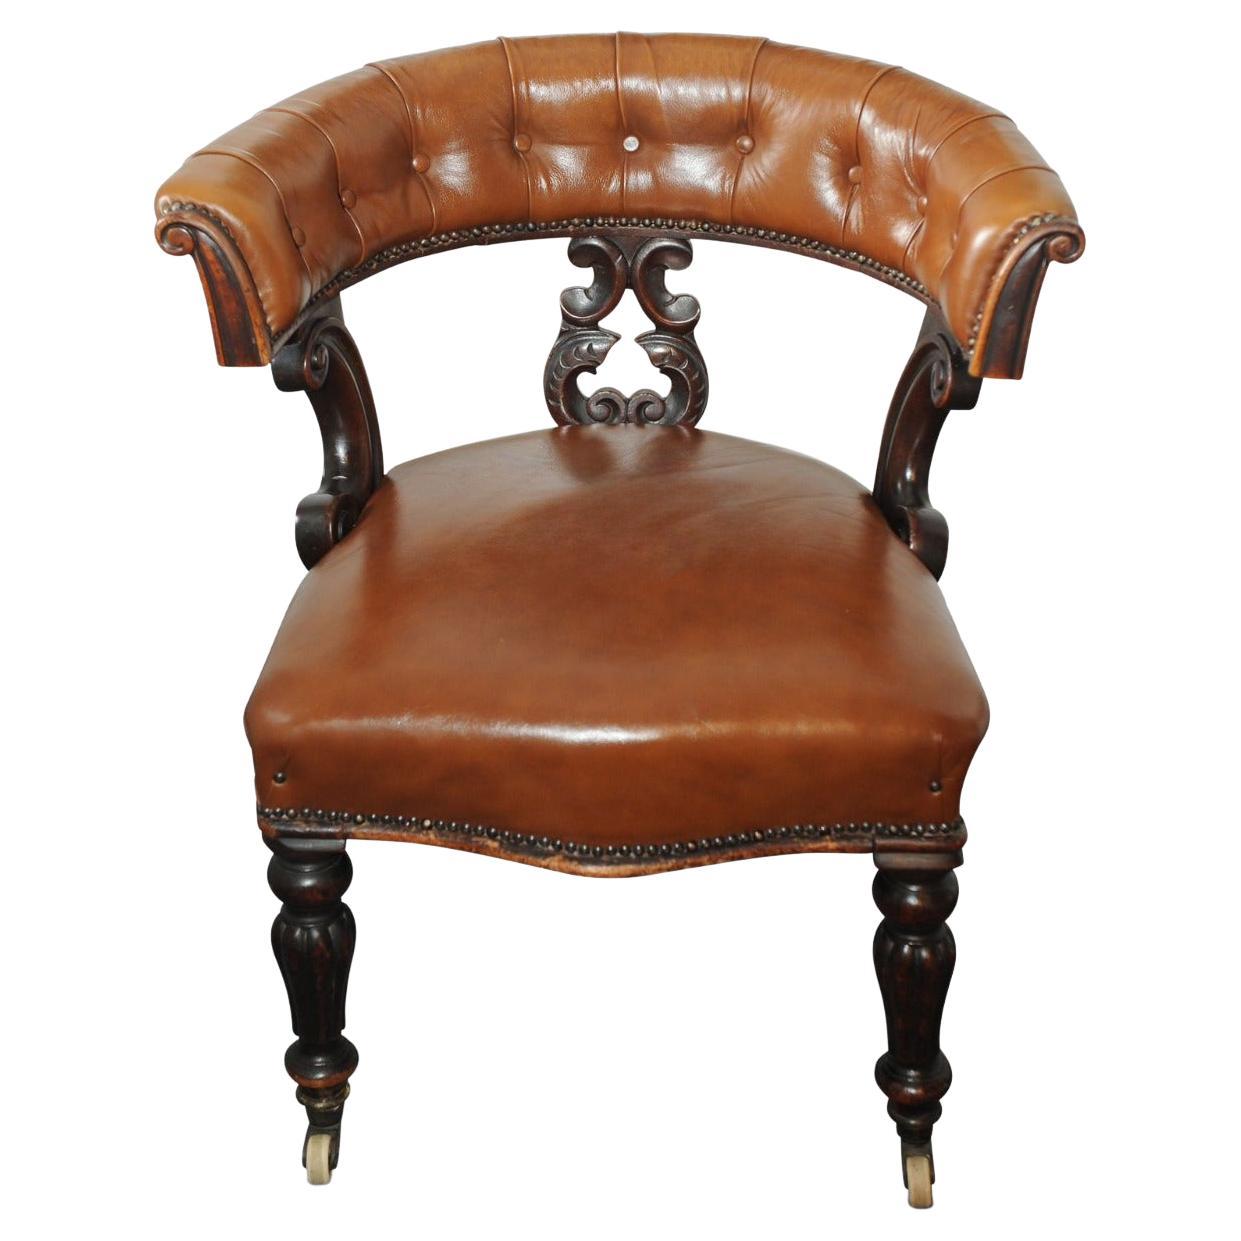 Original fauteuil de capitaine Chesterfield en cuir fauve poli, datant des années 1830, sur roulettes en porcelaine et orné de clous en laiton.

Chaise de bibliothèque classique à dossier boutonné avec cadre sculpté.

.